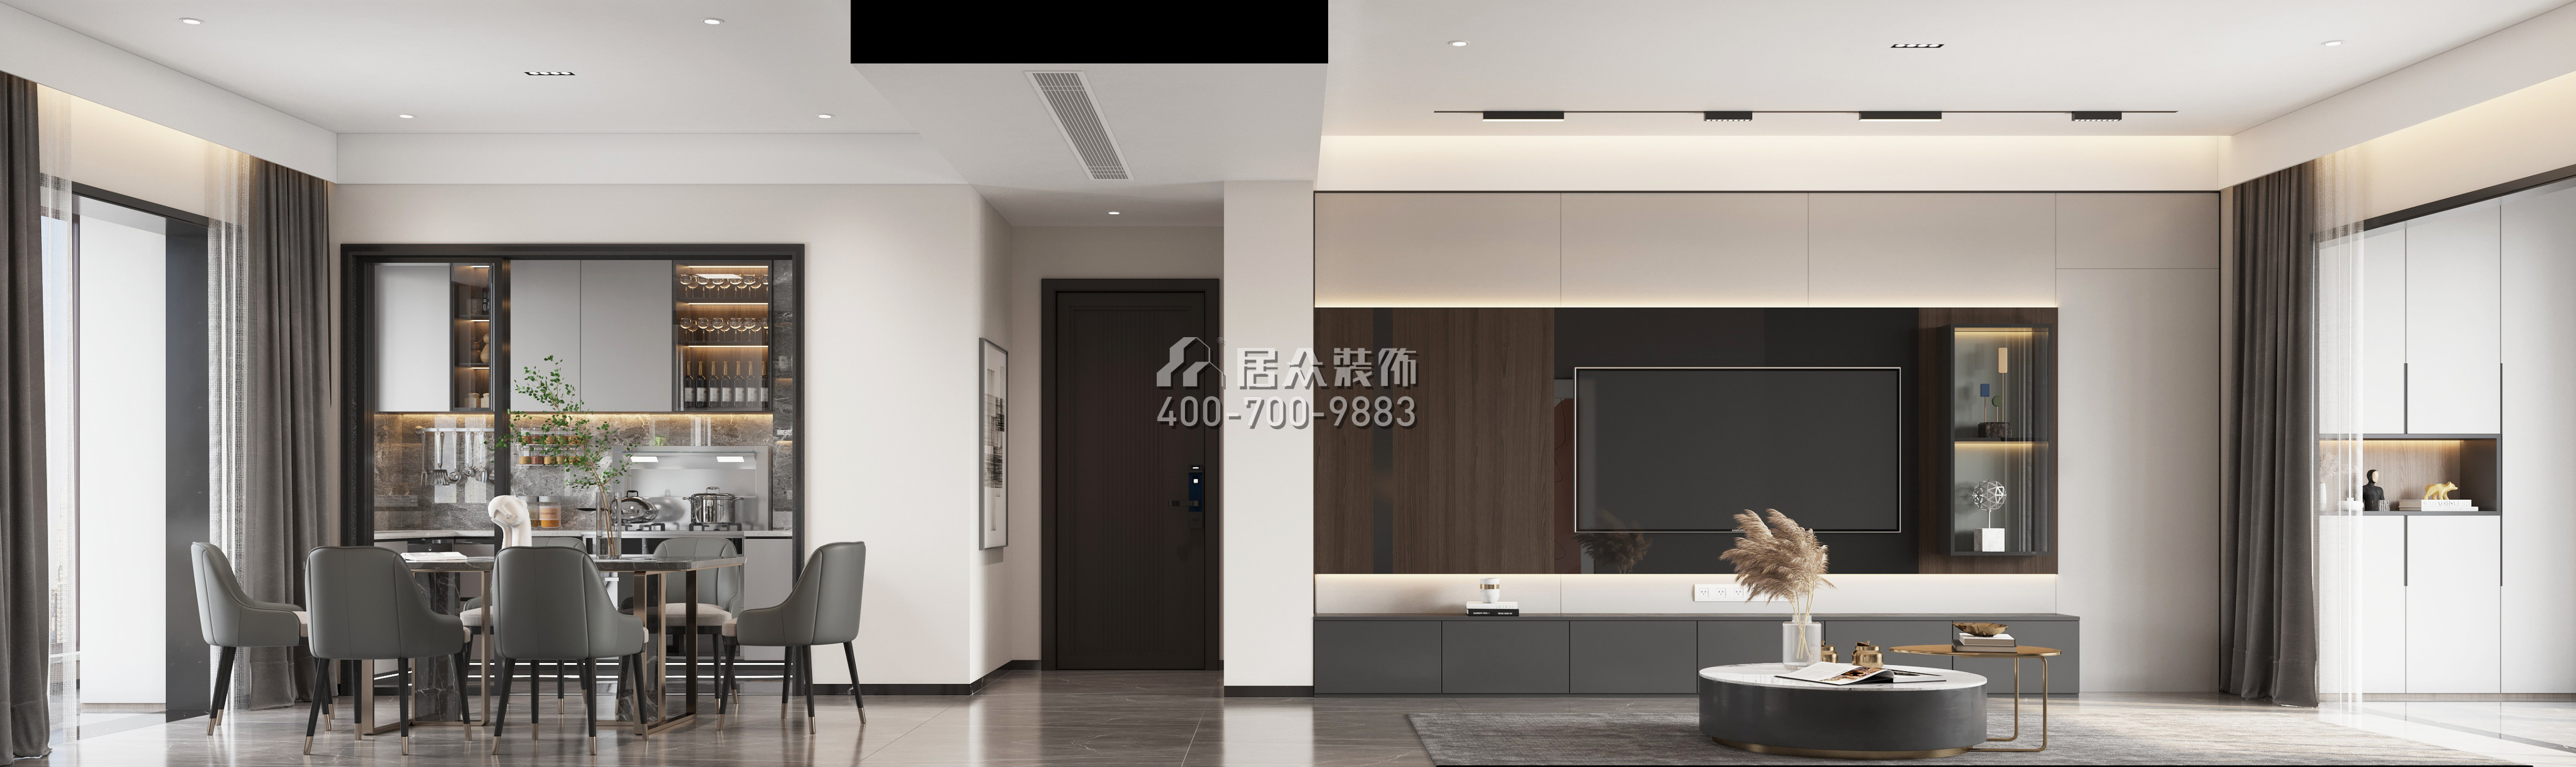 翠湖香山别苑139平方米现代简约风格平层户型客餐厅一体装修效果图